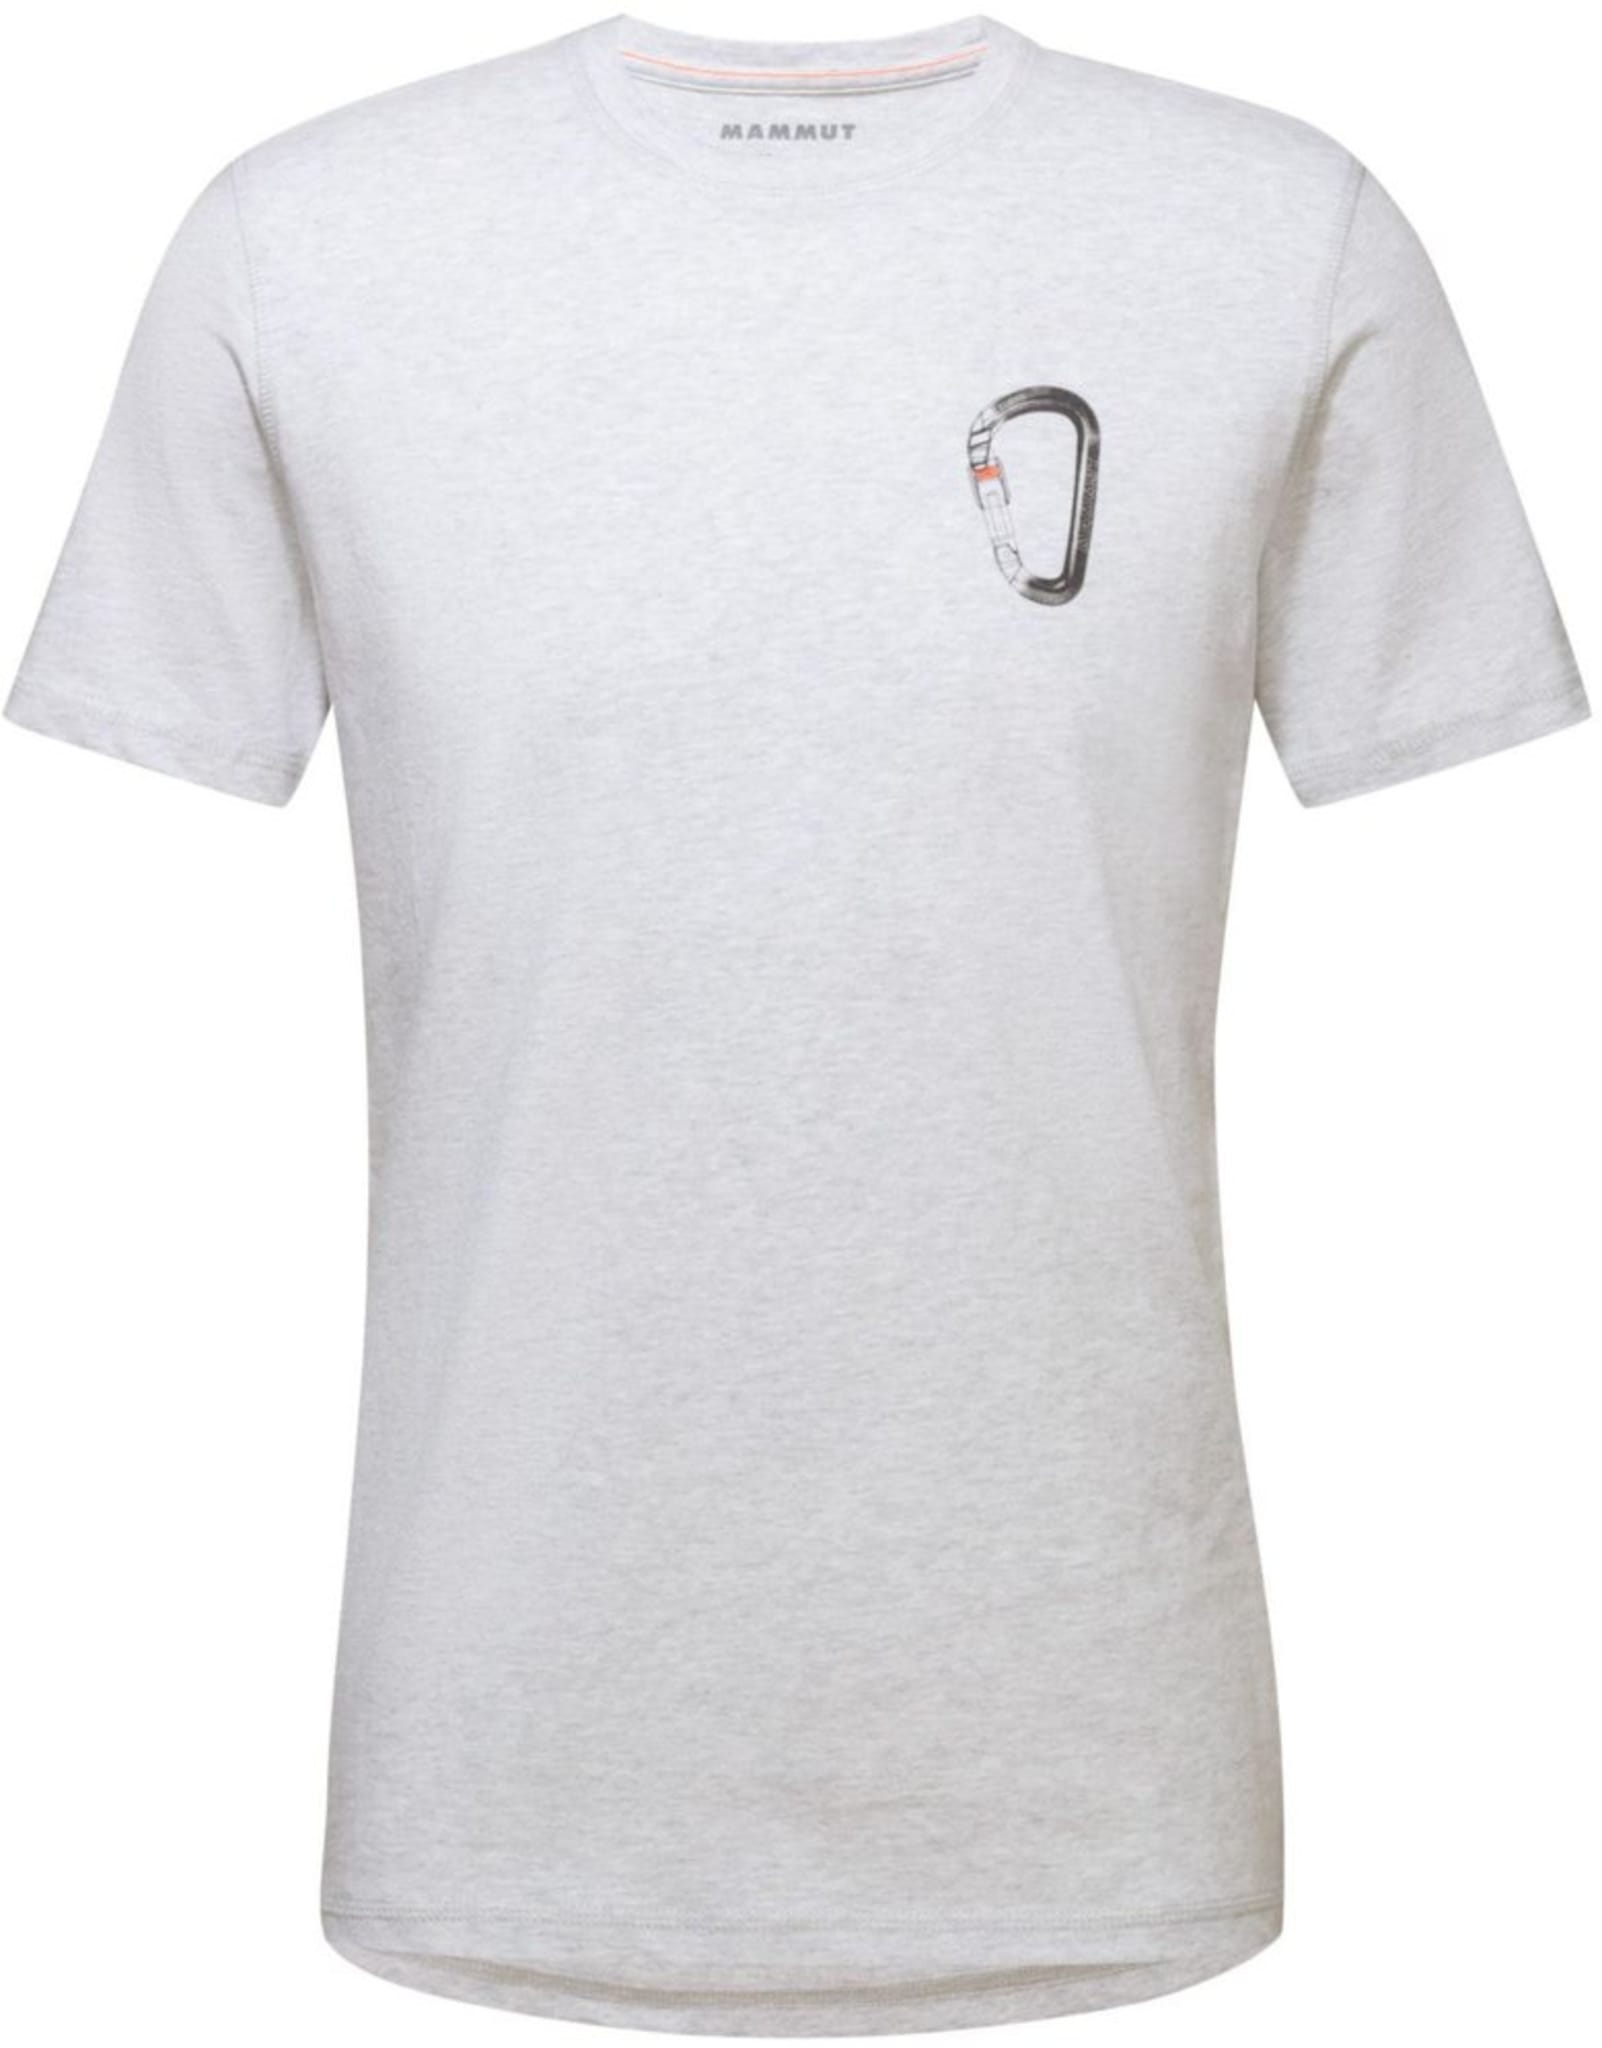 T-skjorte for klaterfans